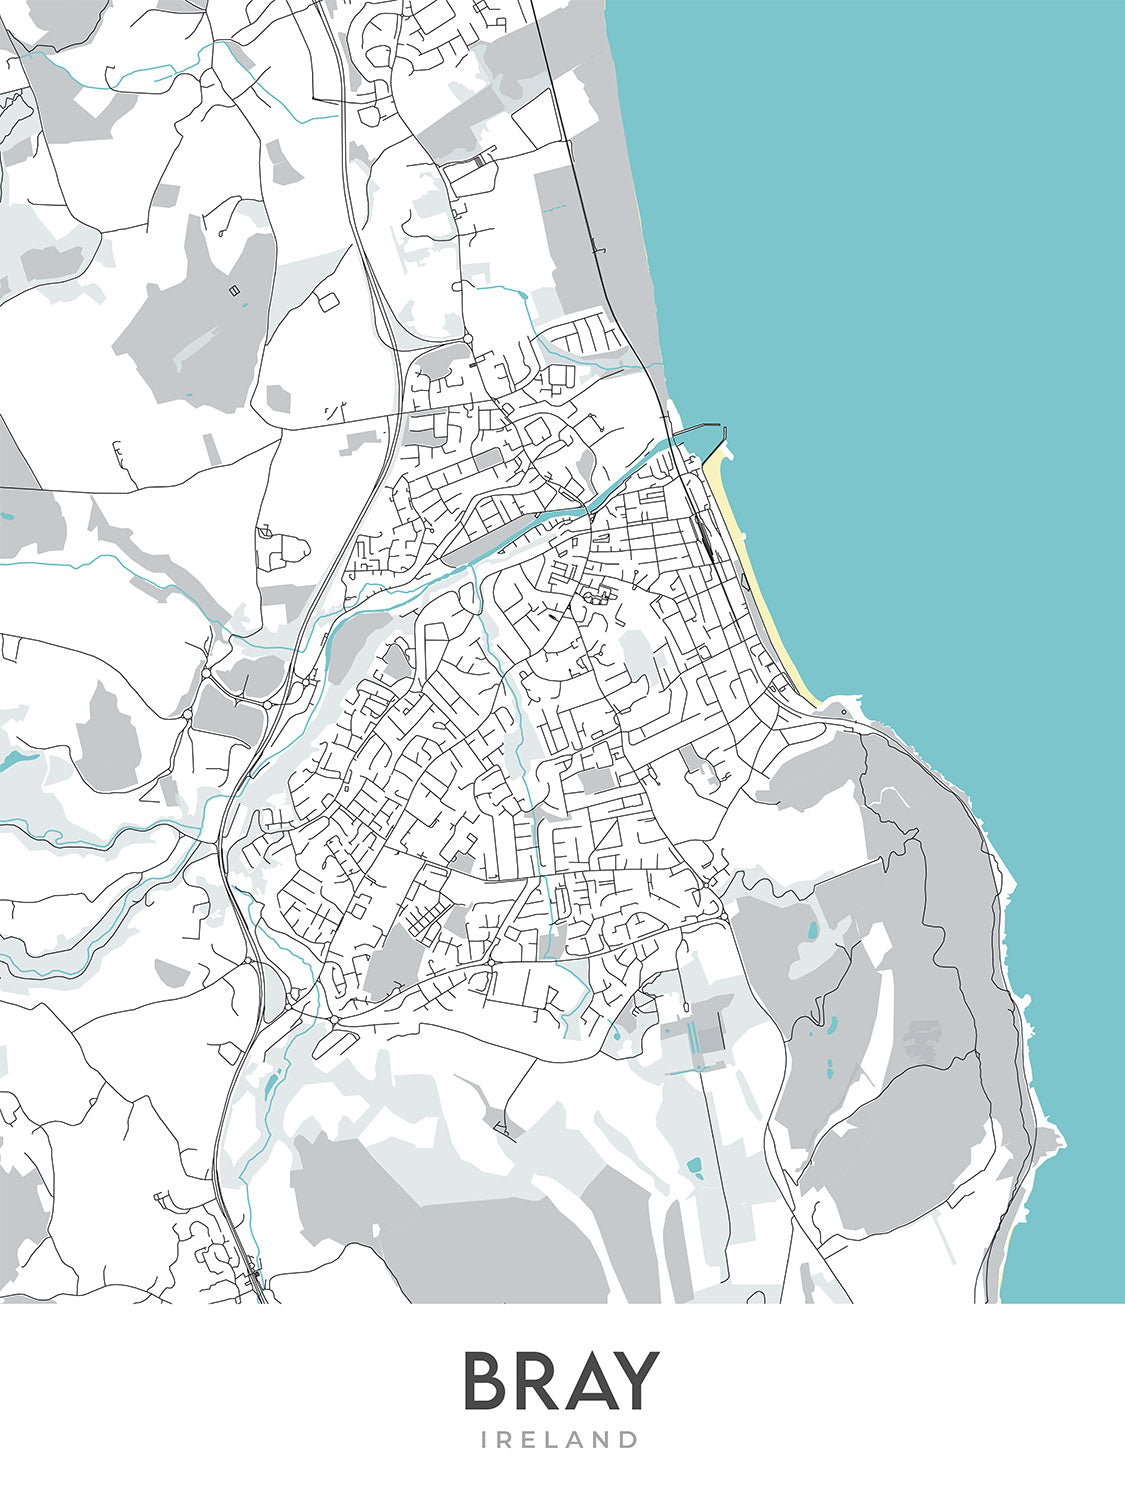 Mapa moderno de la ciudad de Bray, Irlanda: Bray Head, Bray Harbour, Reserva Natural de Bray Head, N11, R117